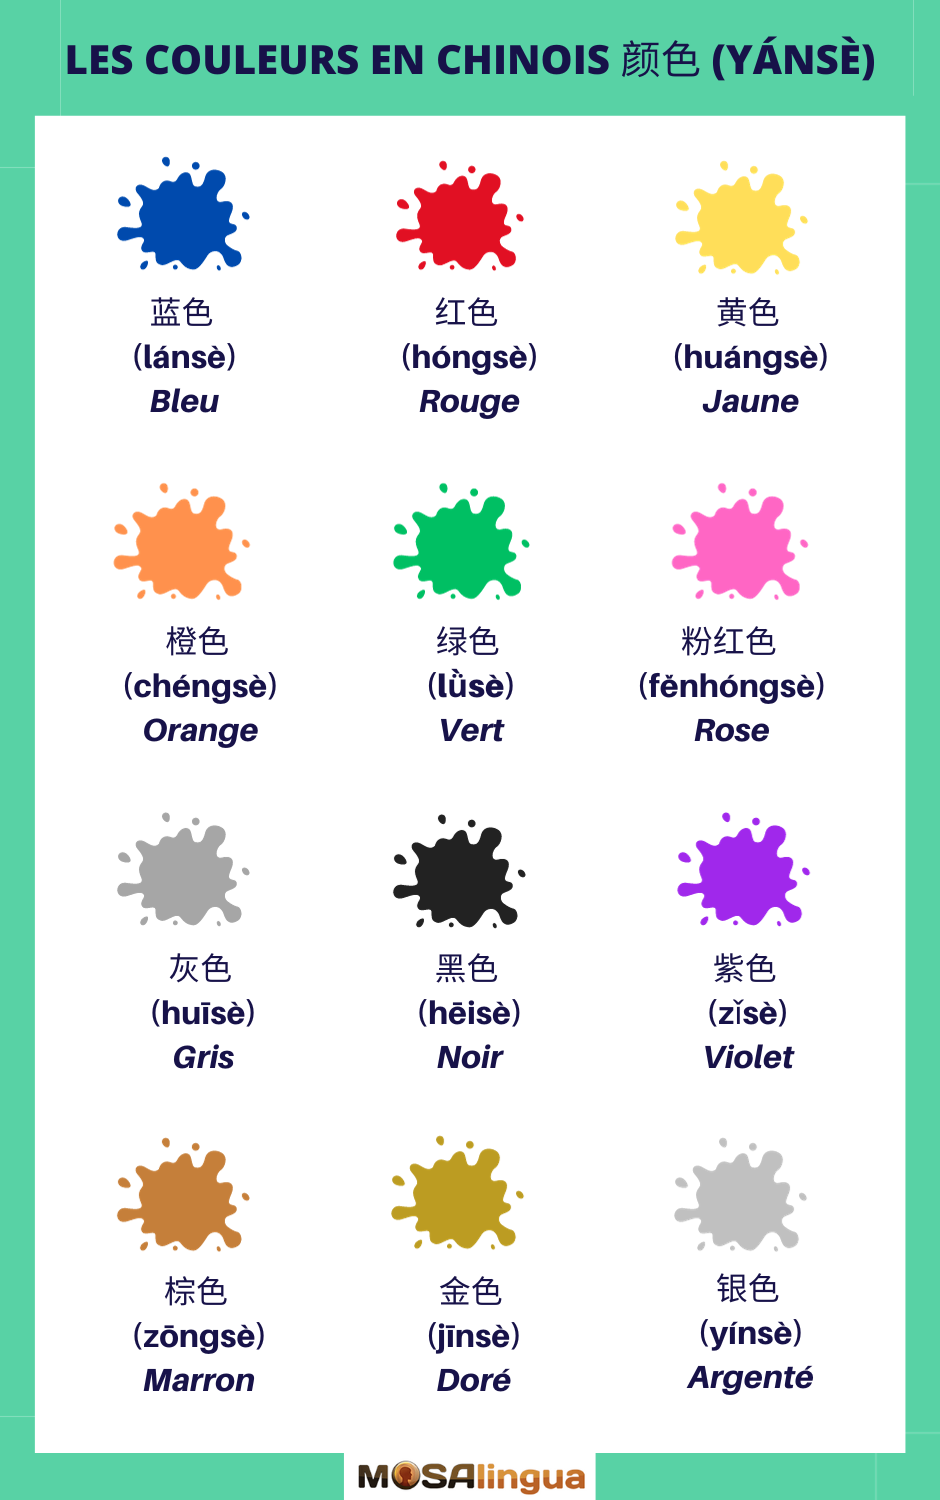 Les couleurs en chinois